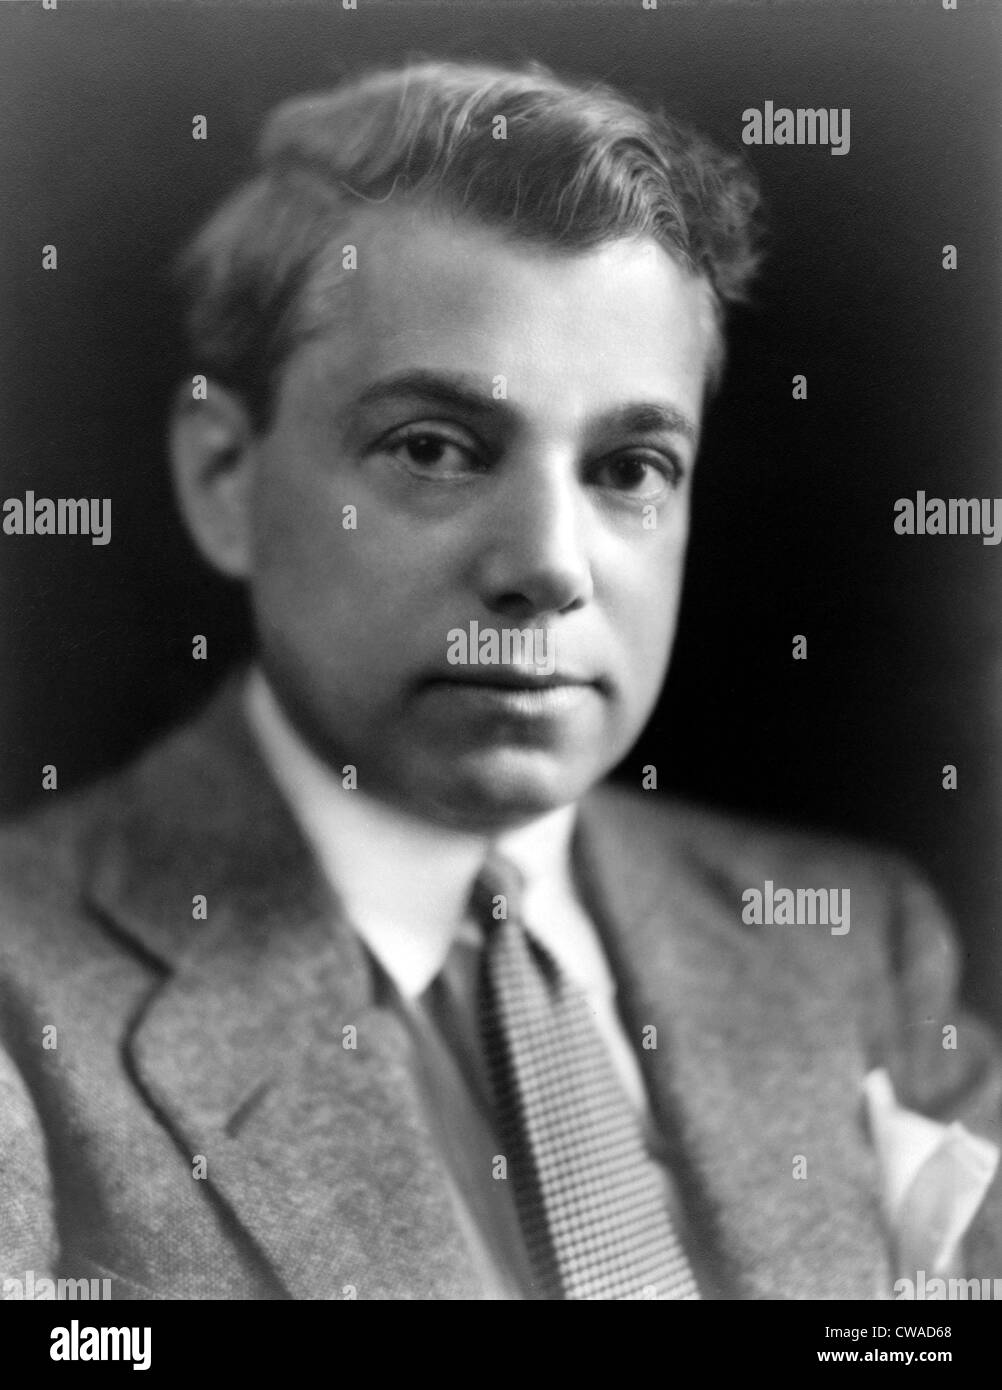 George Jean Nathan (1882-1958) critique de théâtre américain, d'esprit et bon vivant. Un membre de la Table ronde Algonquin, il Banque D'Images